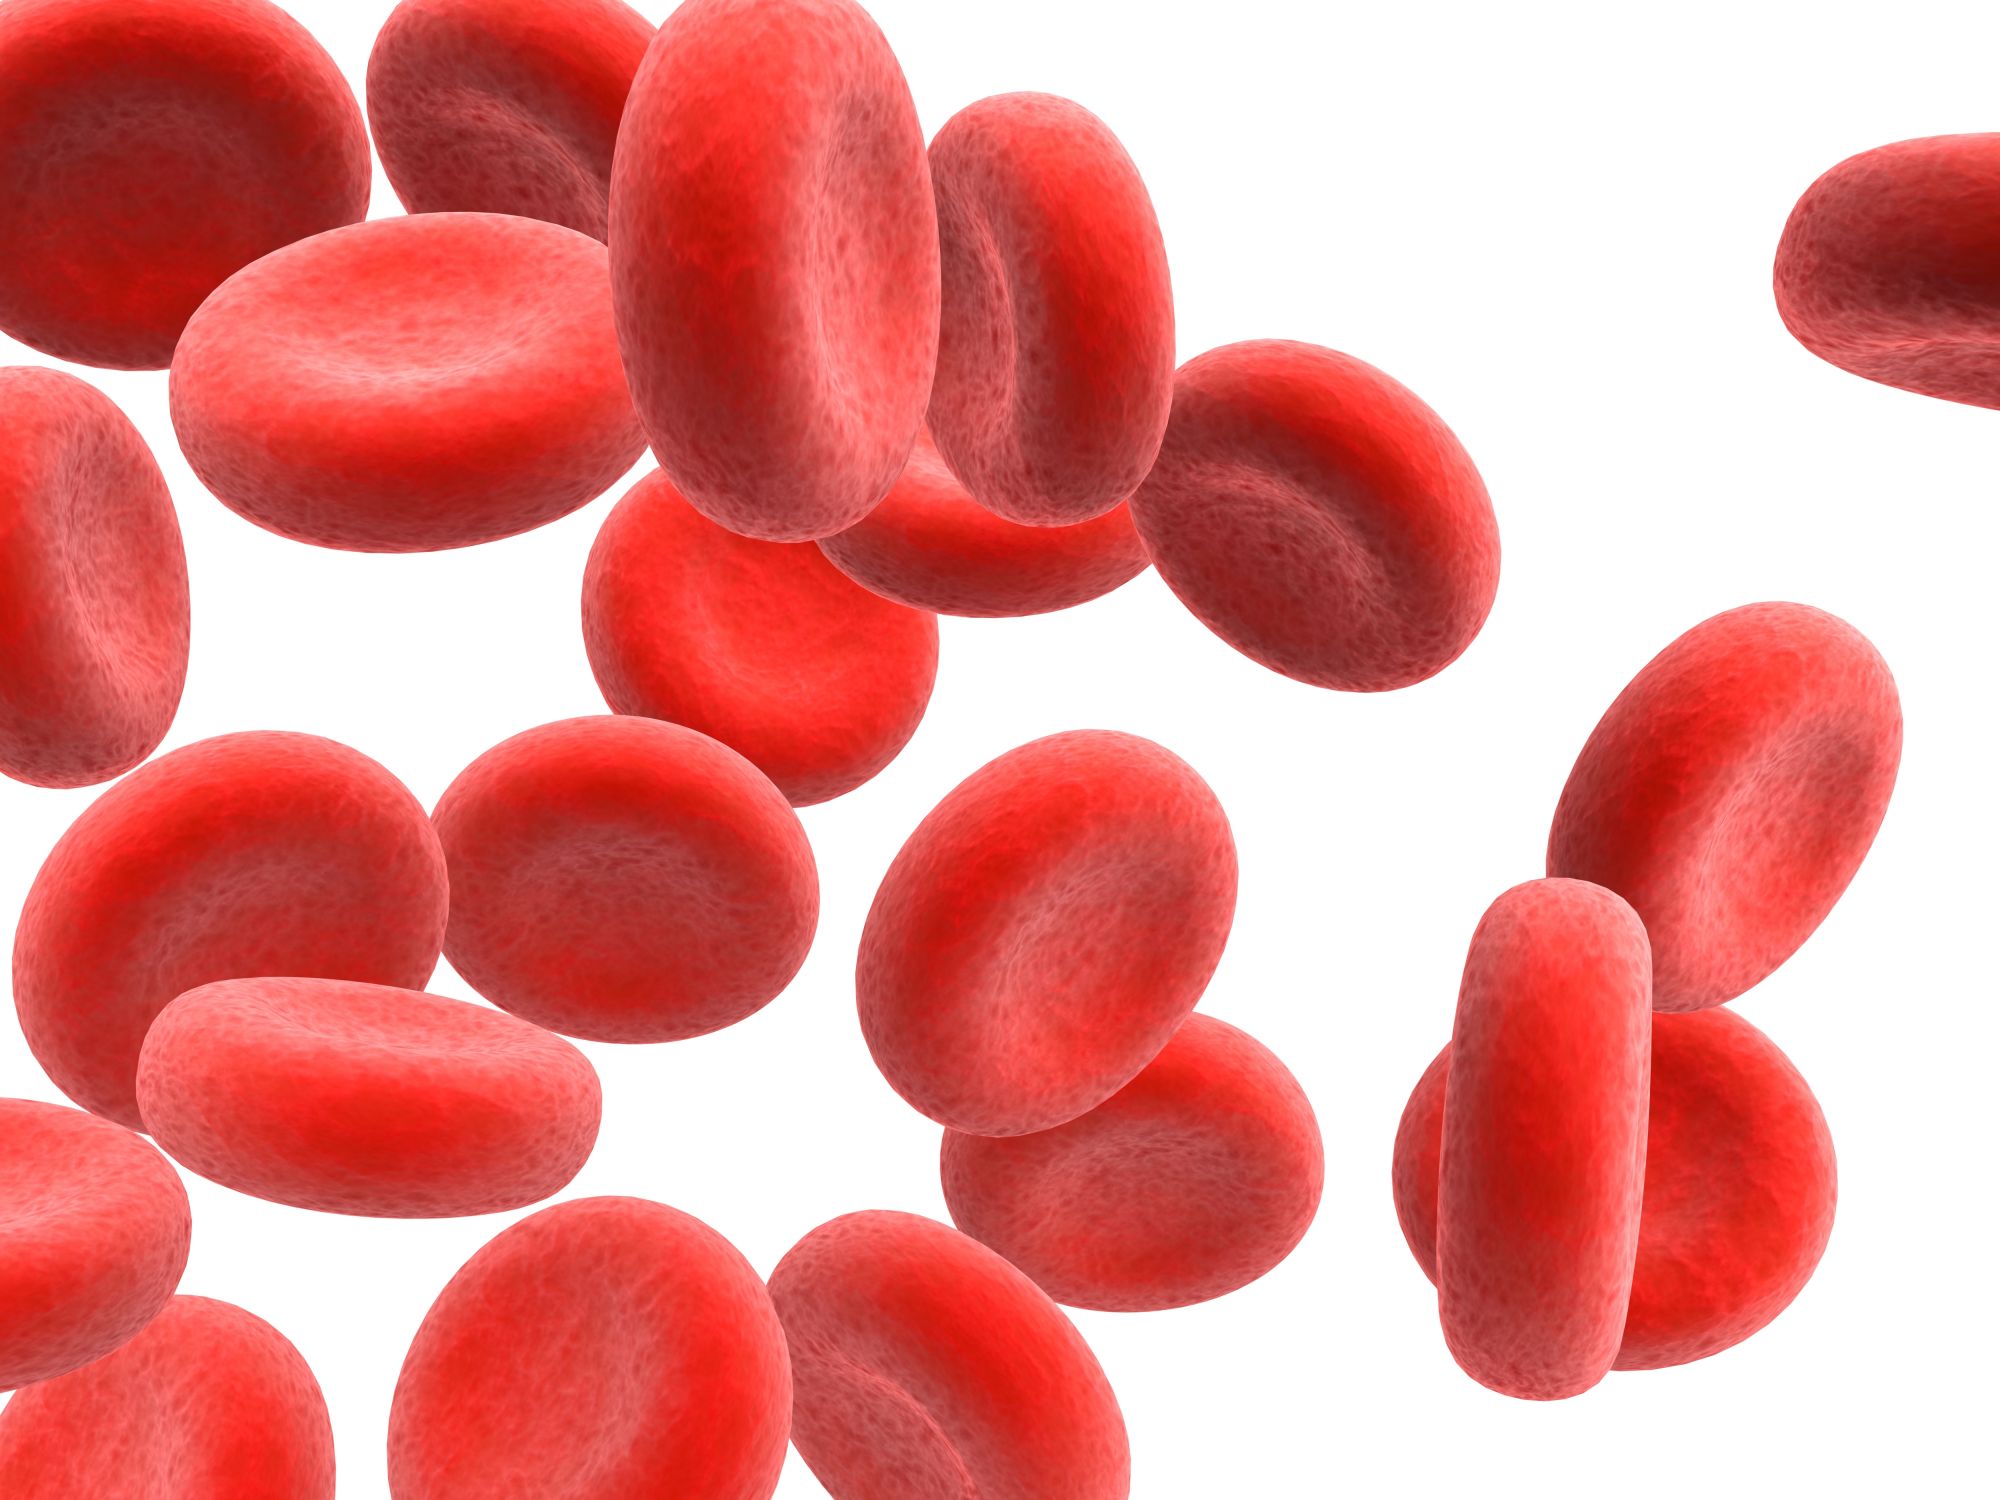 cervene krvinky